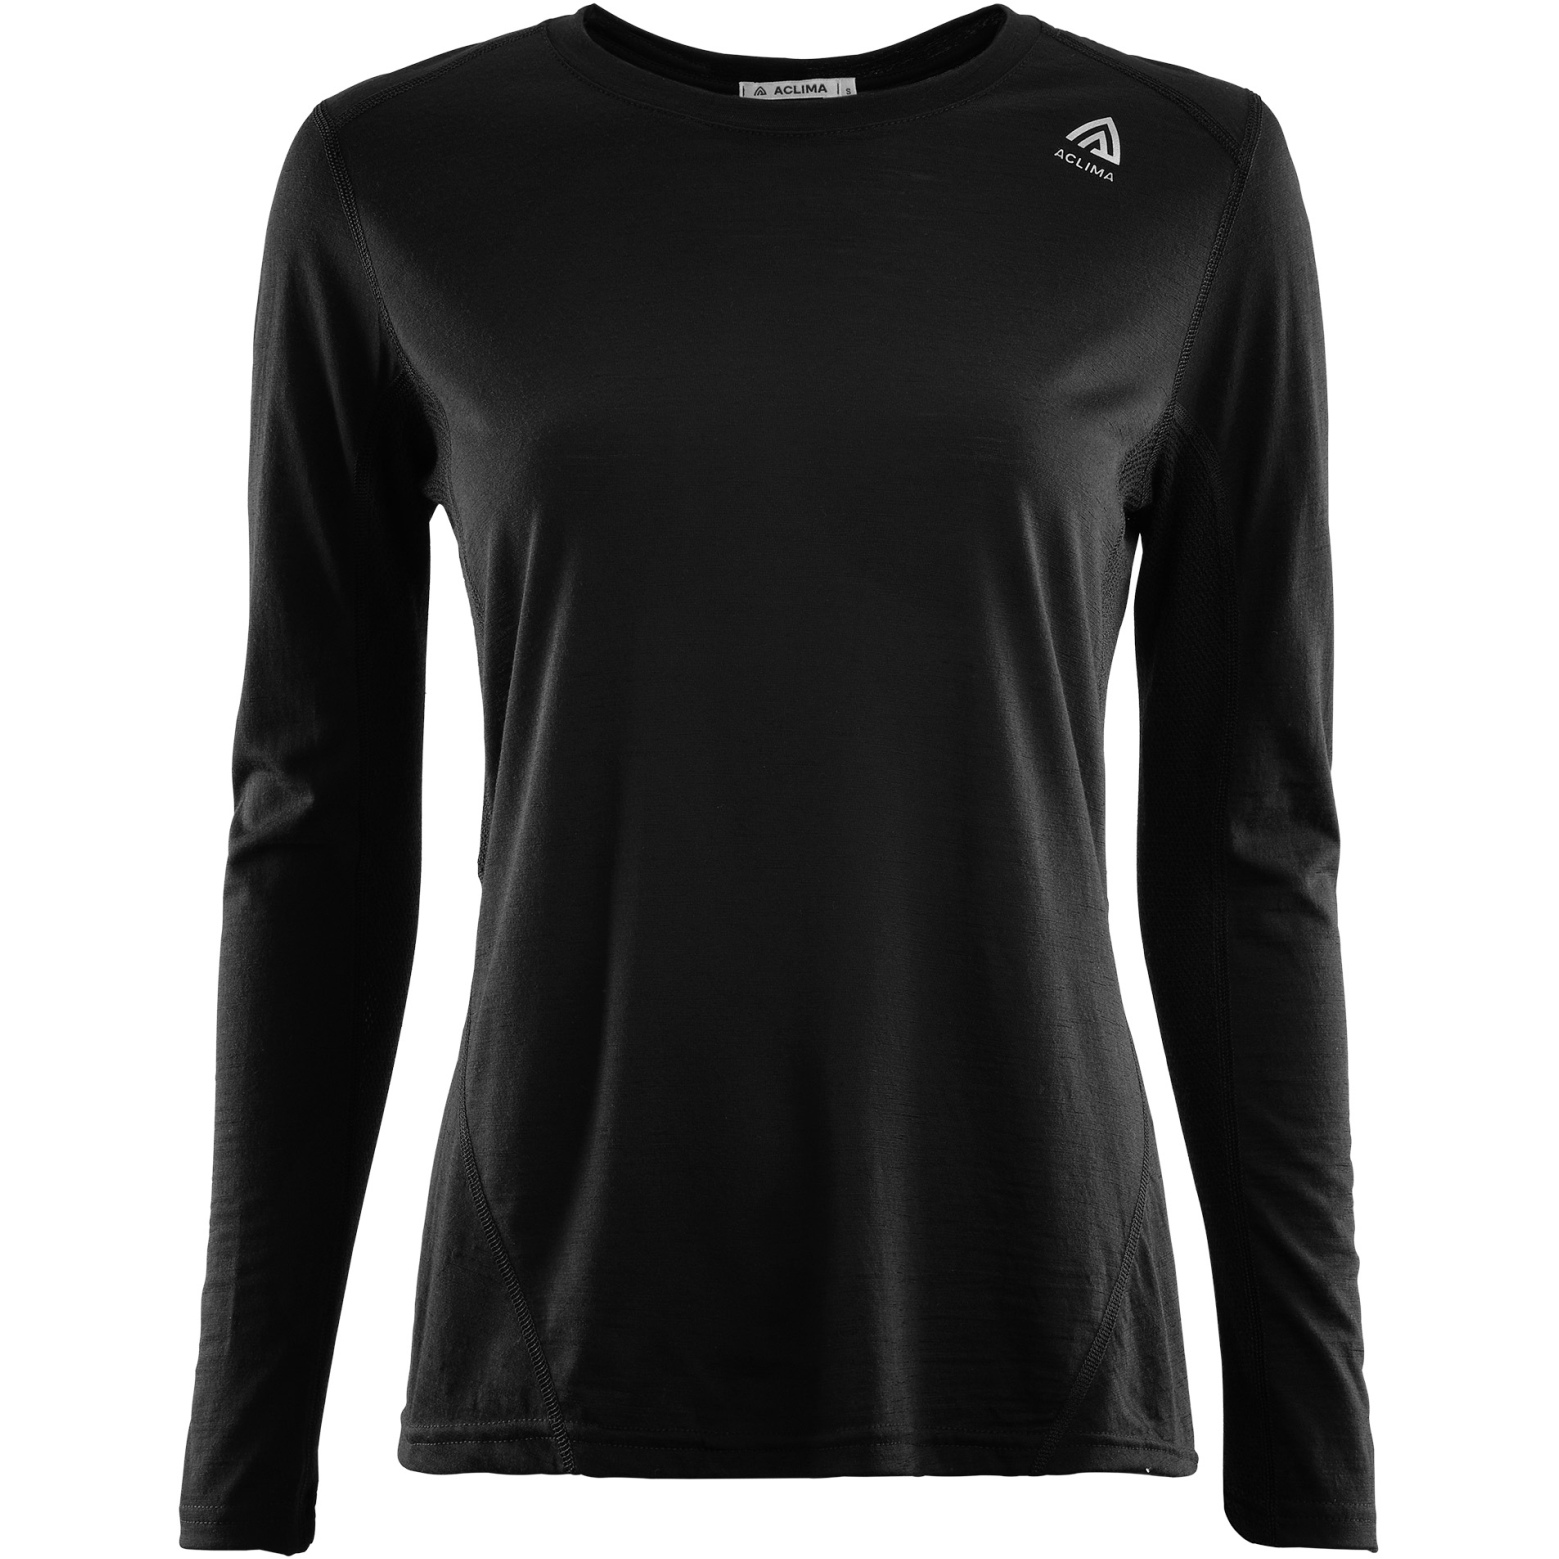 Produktbild von Aclima Lightwool Sport Shirt Damen - jet black